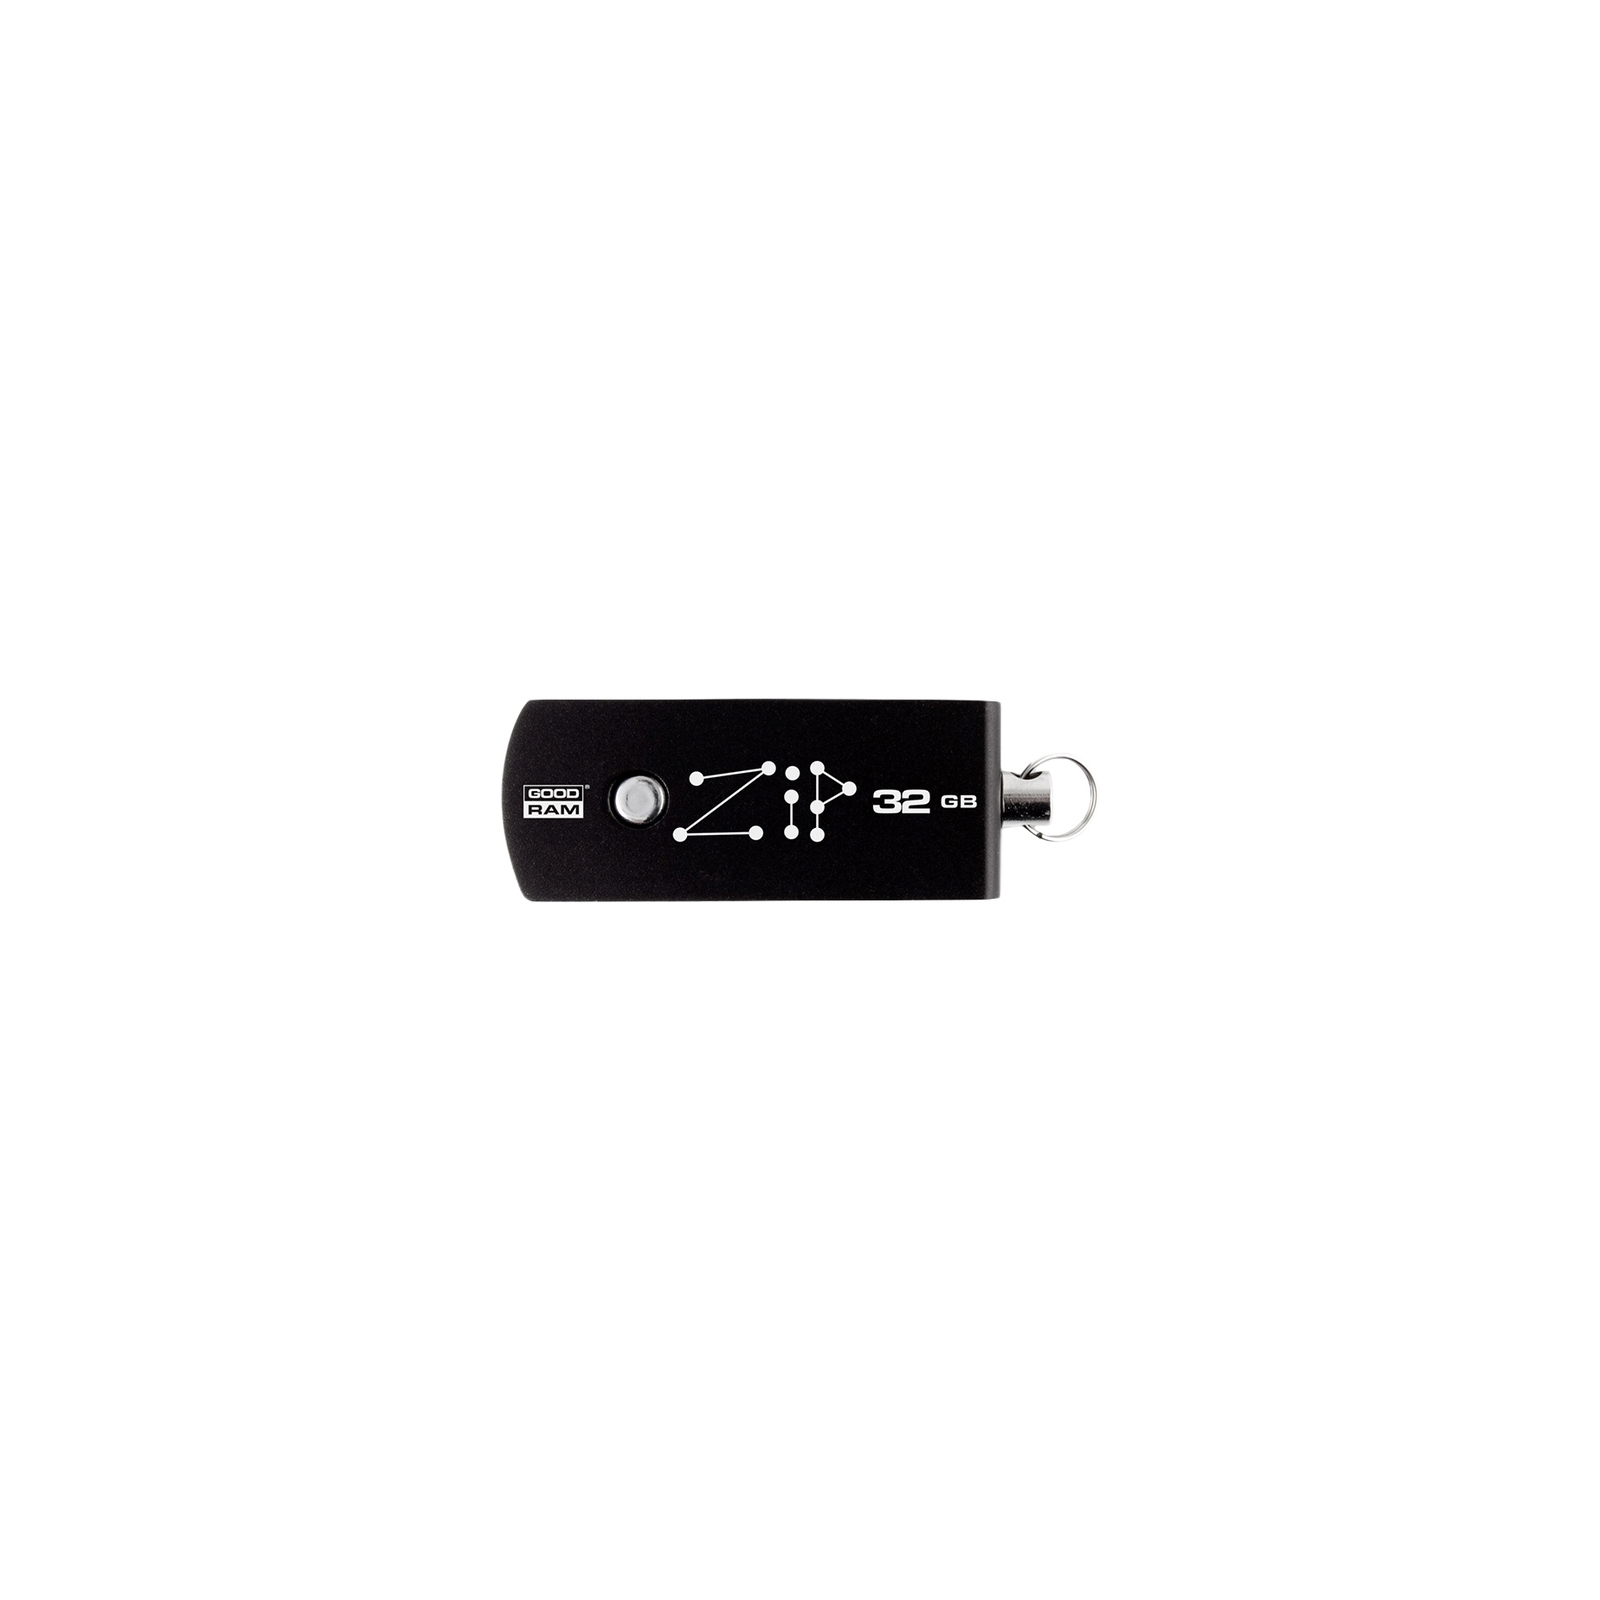 USB флеш накопичувач Goodram 32GB Zip Black USB 2.0 (PD32GH2GRZIKR9)